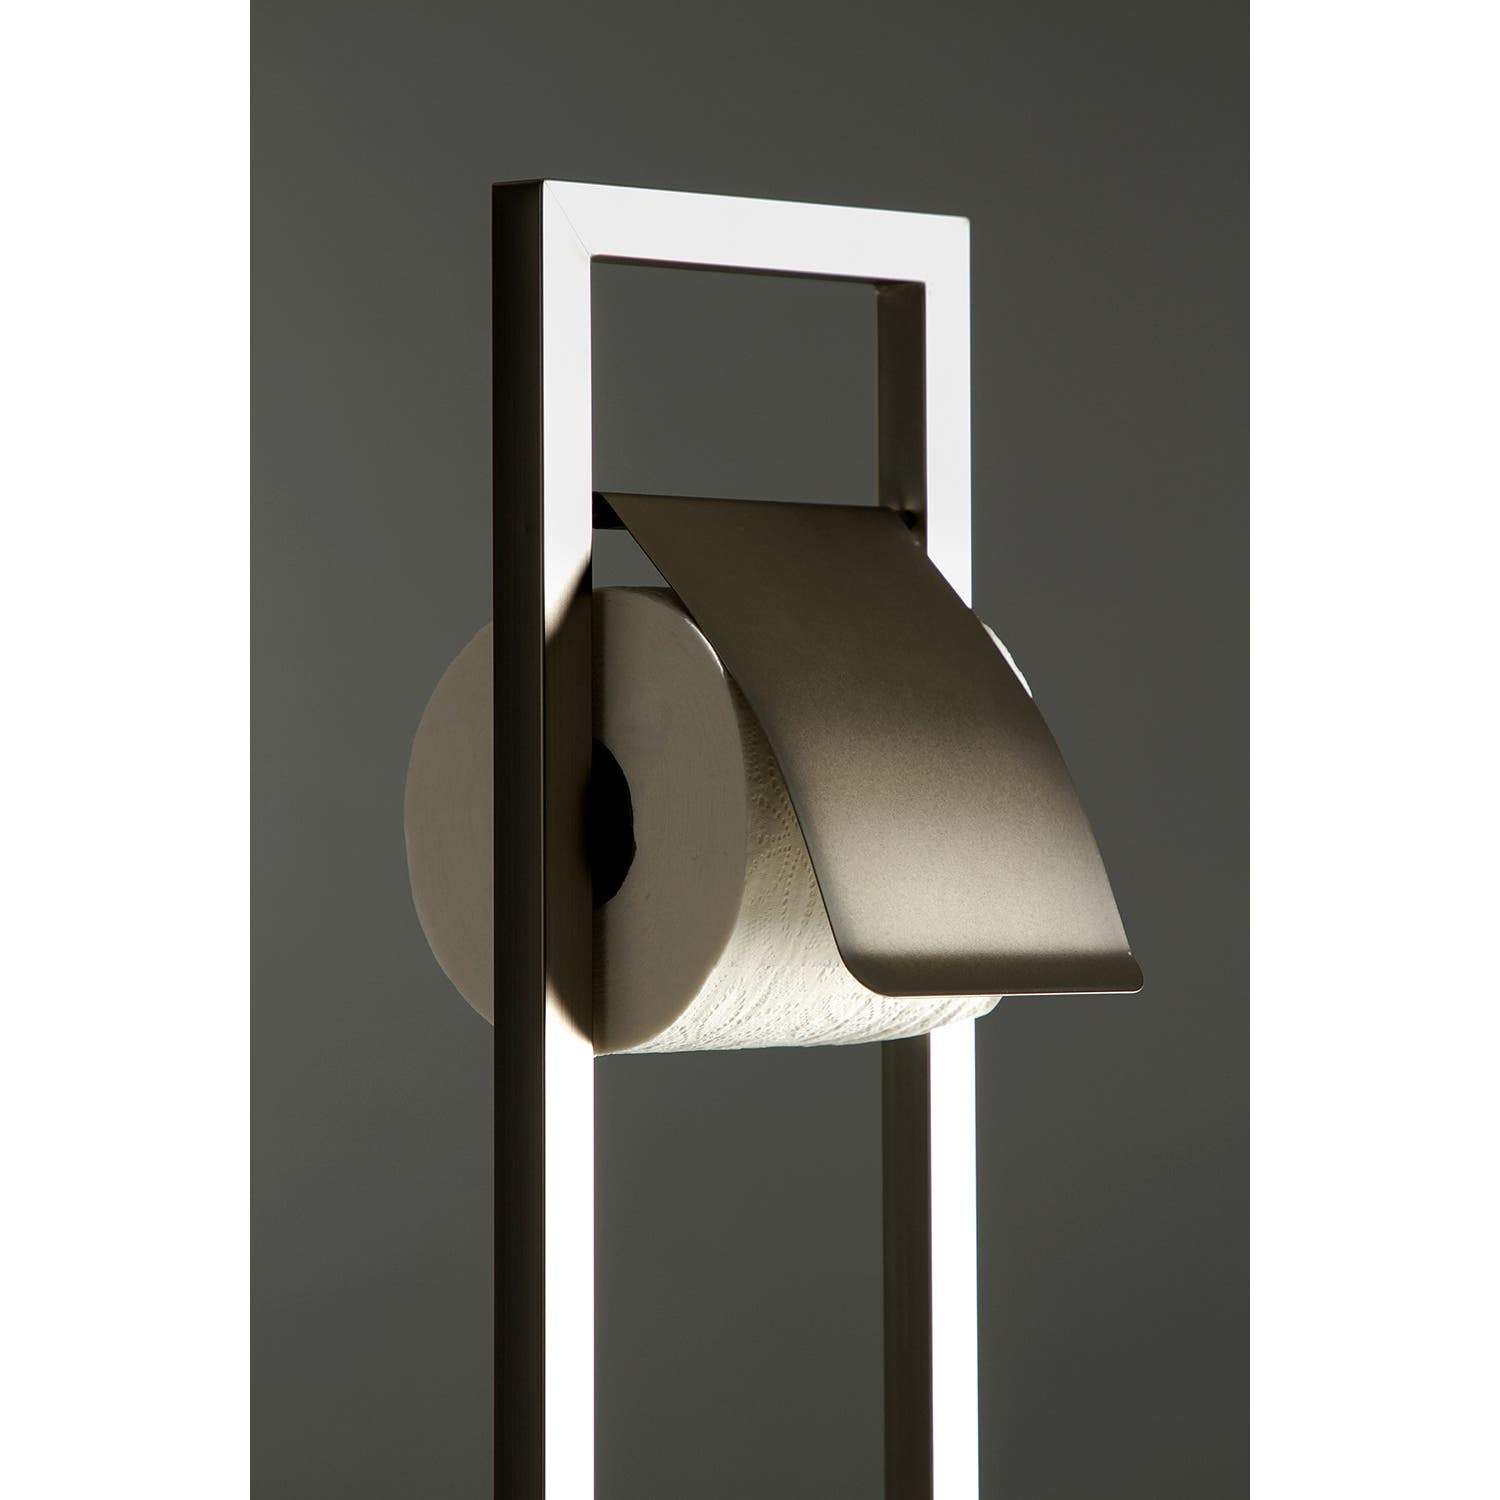 Kingston Brass Pedestal Toilet Paper Holder with Toilet Brush Holder